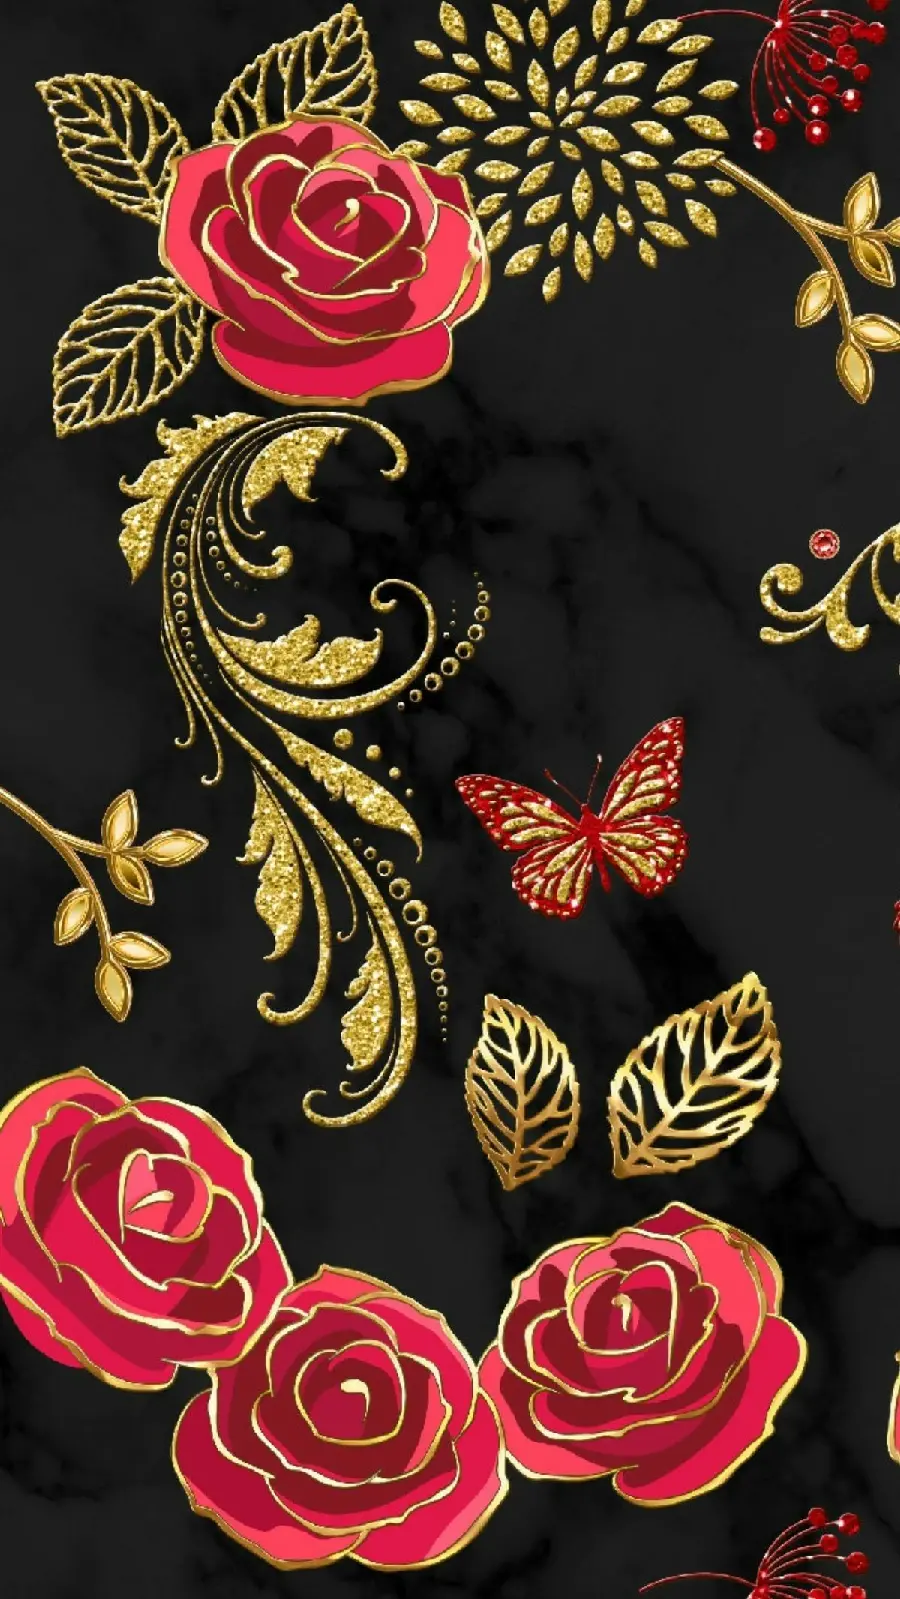 تصویر با زمینه مشکی و طرح گل رز و پروانه های قرمز برای آیفون 